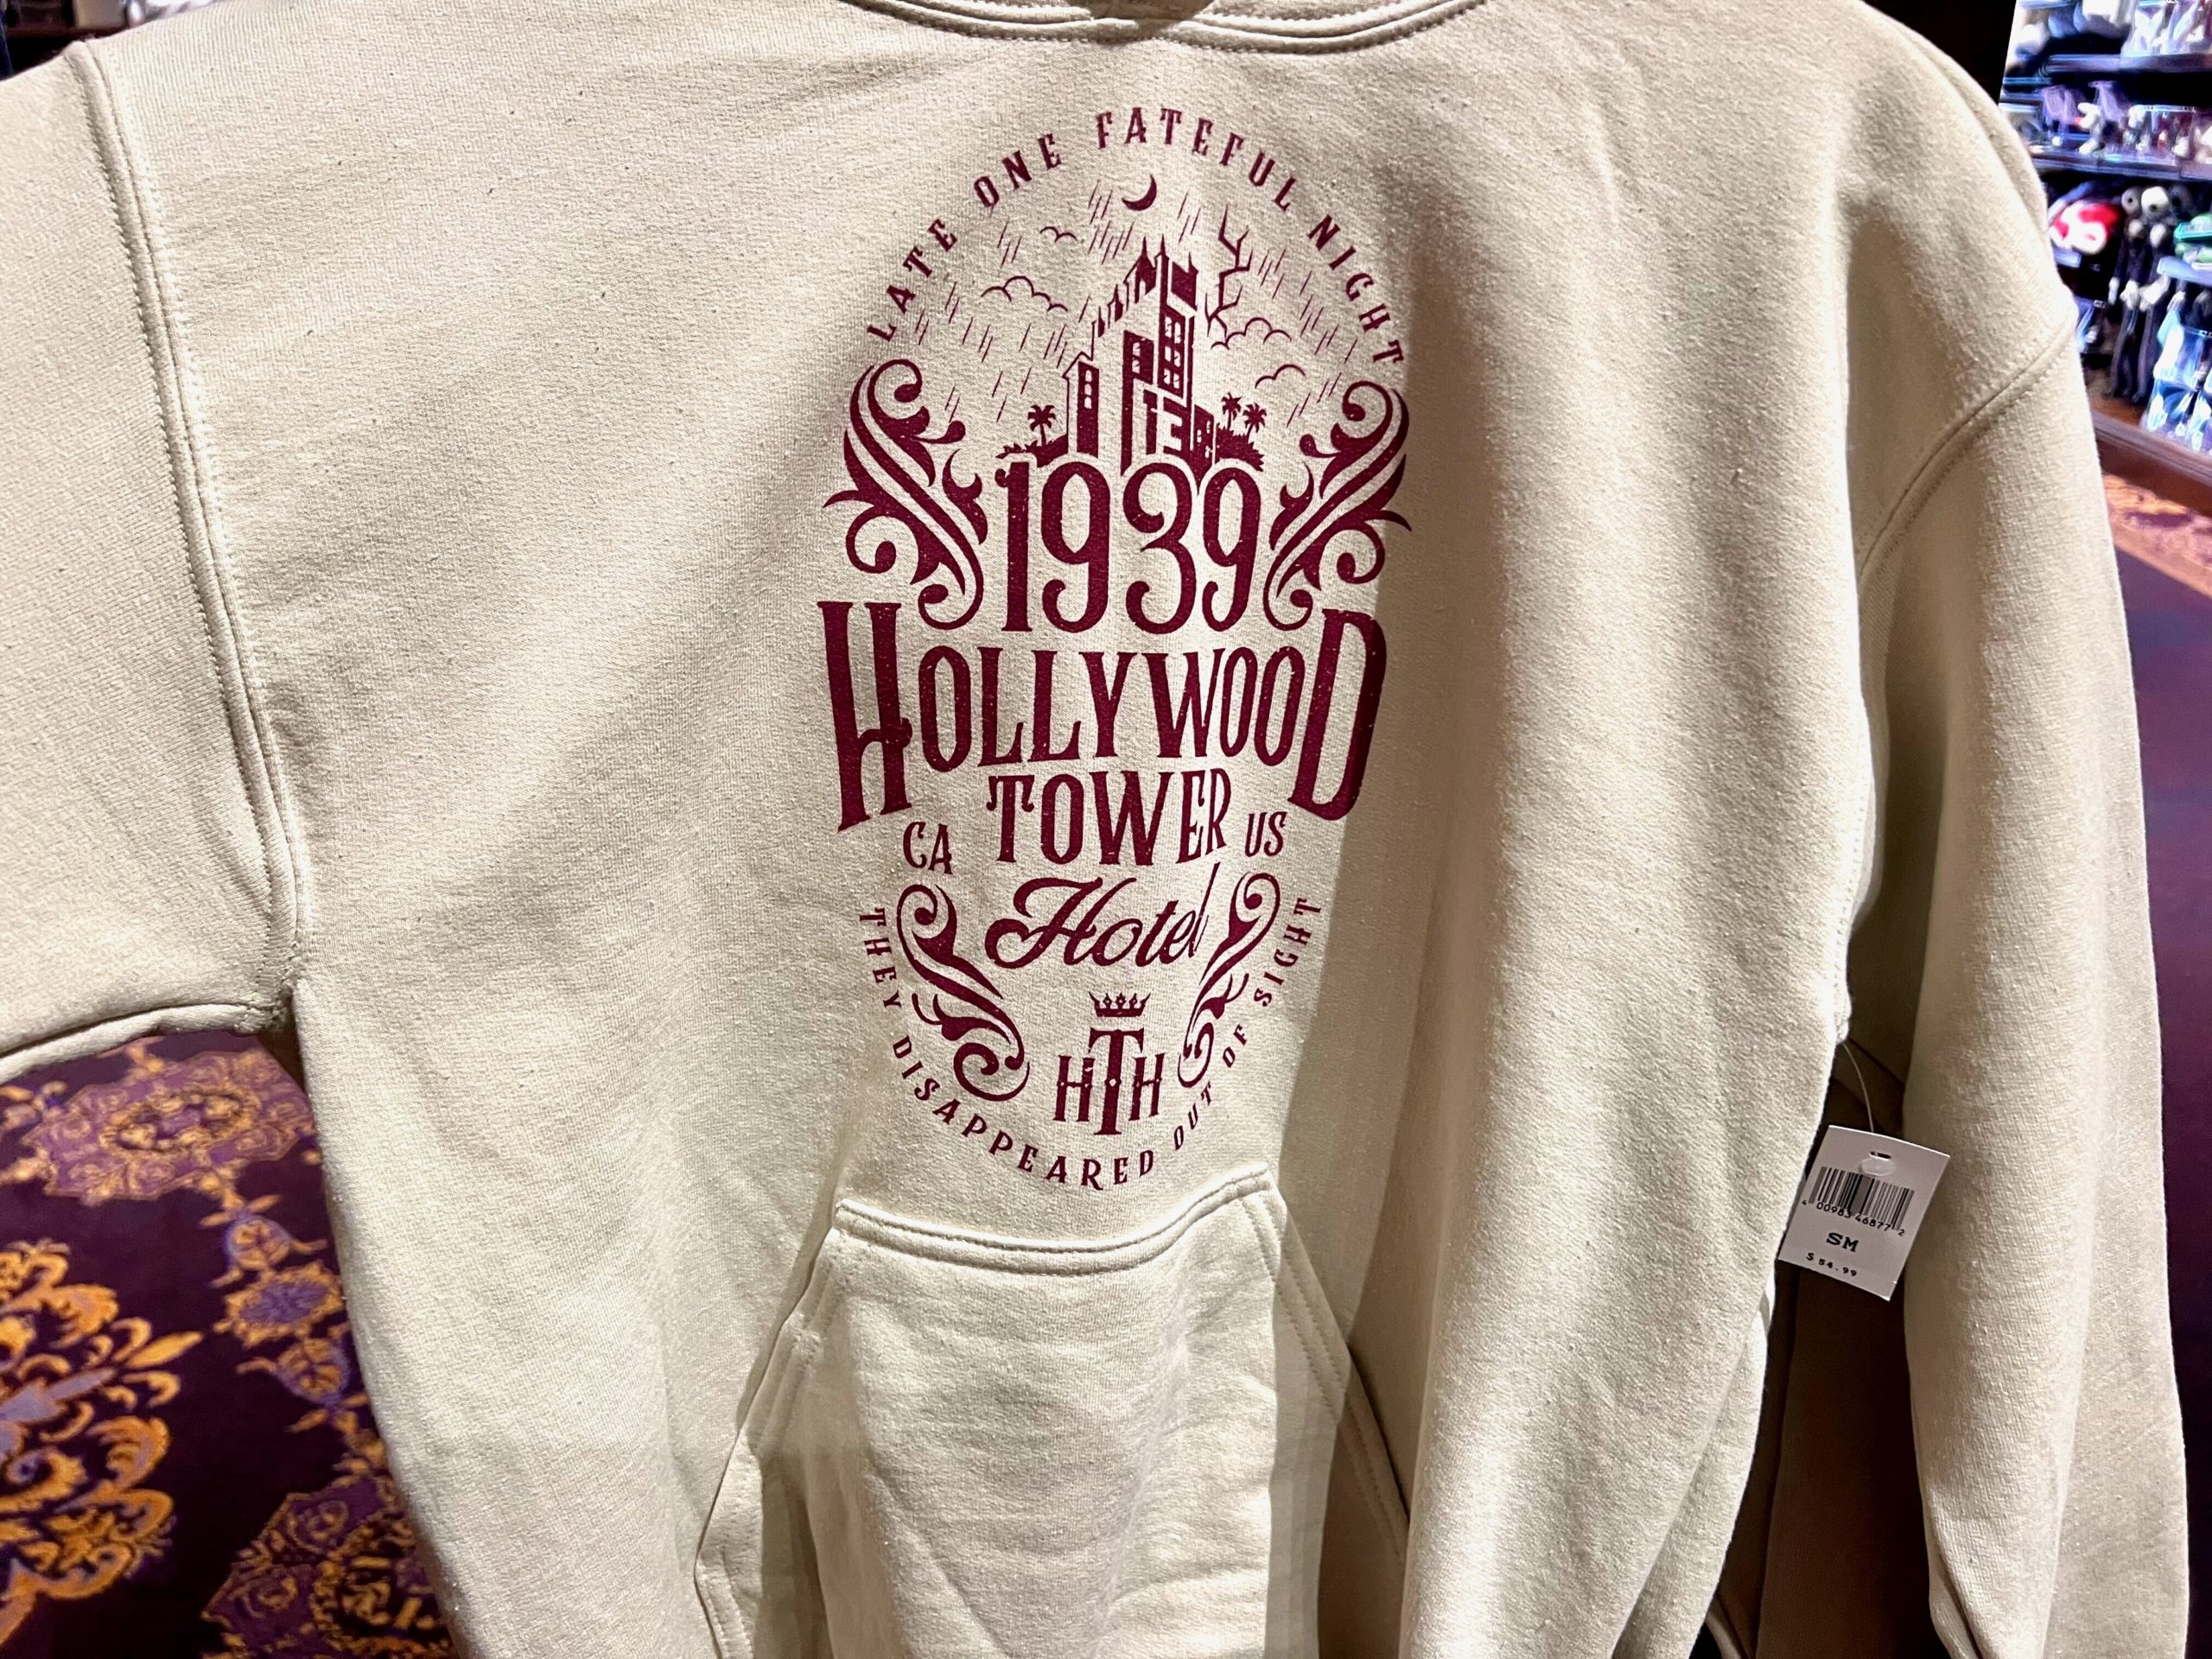 Hollywood Tower Hotel Hoodie Tower of Terror Merchandise